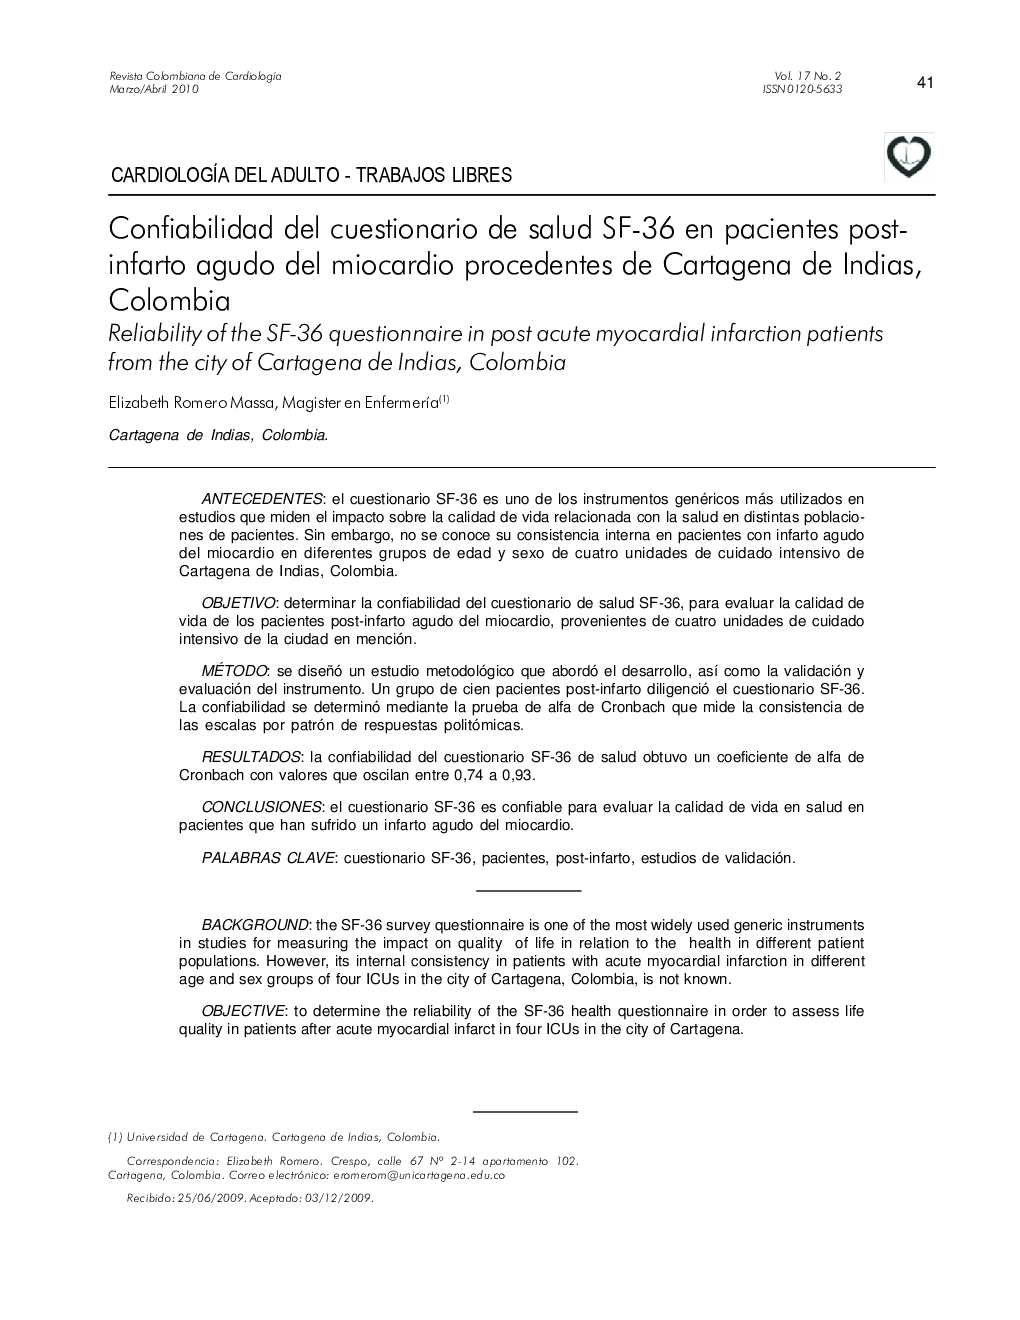 Confiabilidad del cuestionario de salud SF-36 en pacientes postinfarto agudo del miocardio procedentes de Cartagena de Indias, Colombia